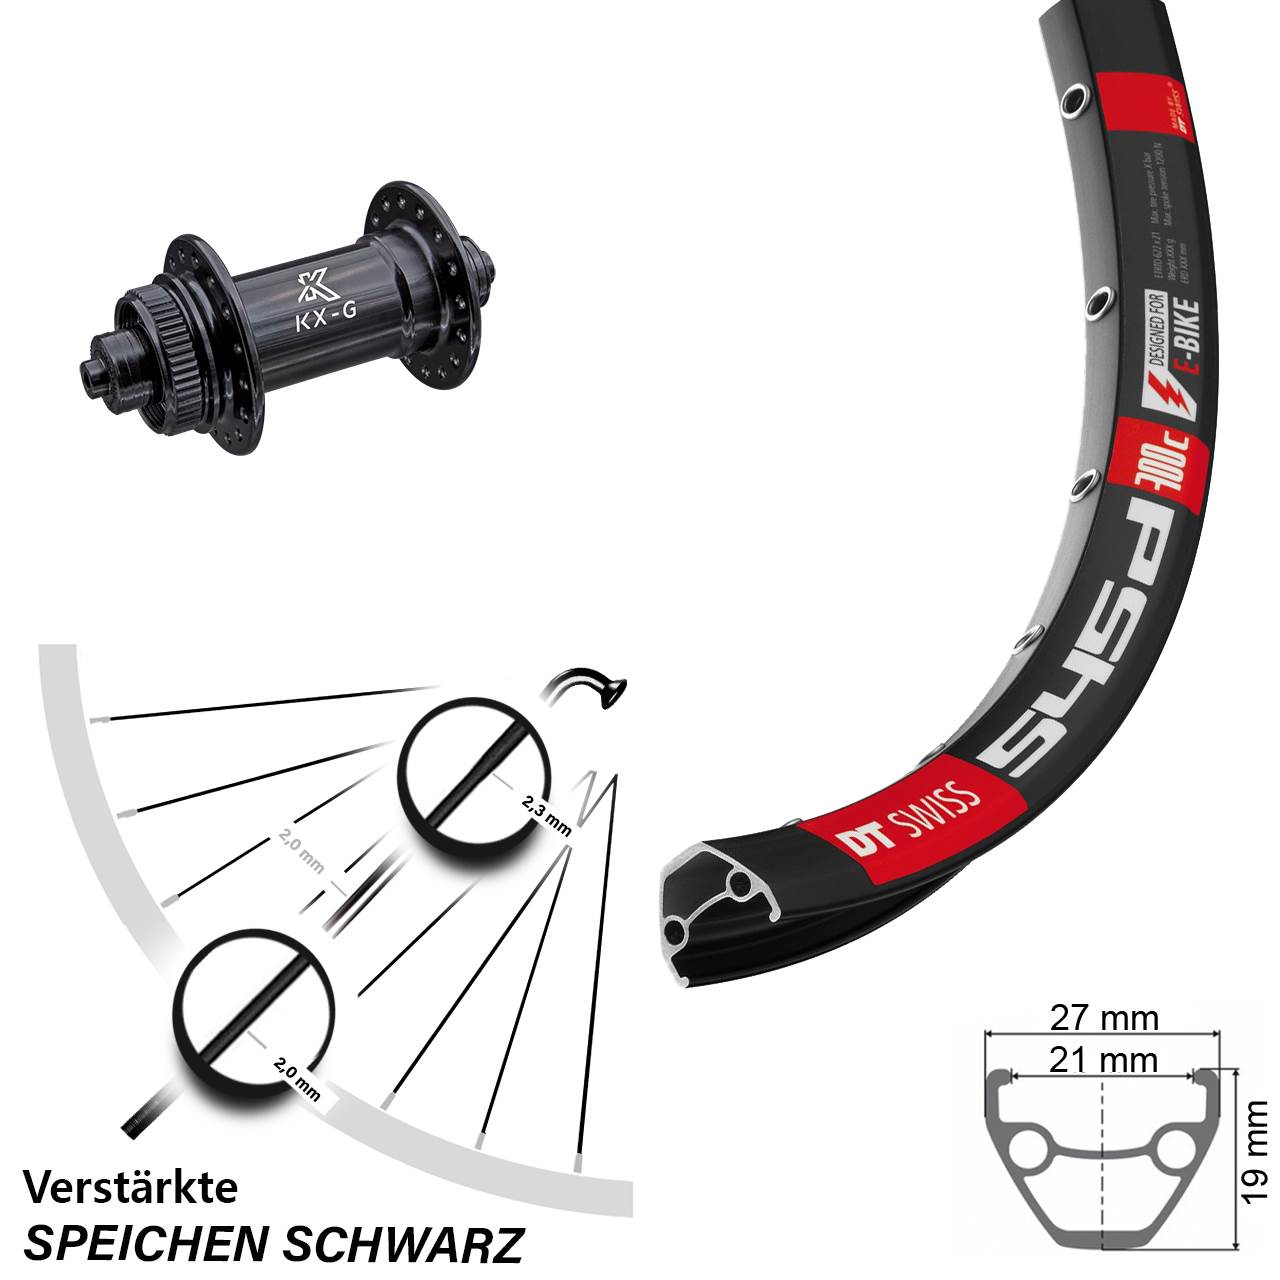 DT Swiss 545 Disc-Vorderrad verstärkt 28-29 Zoll mit KX-G Schnellspanner